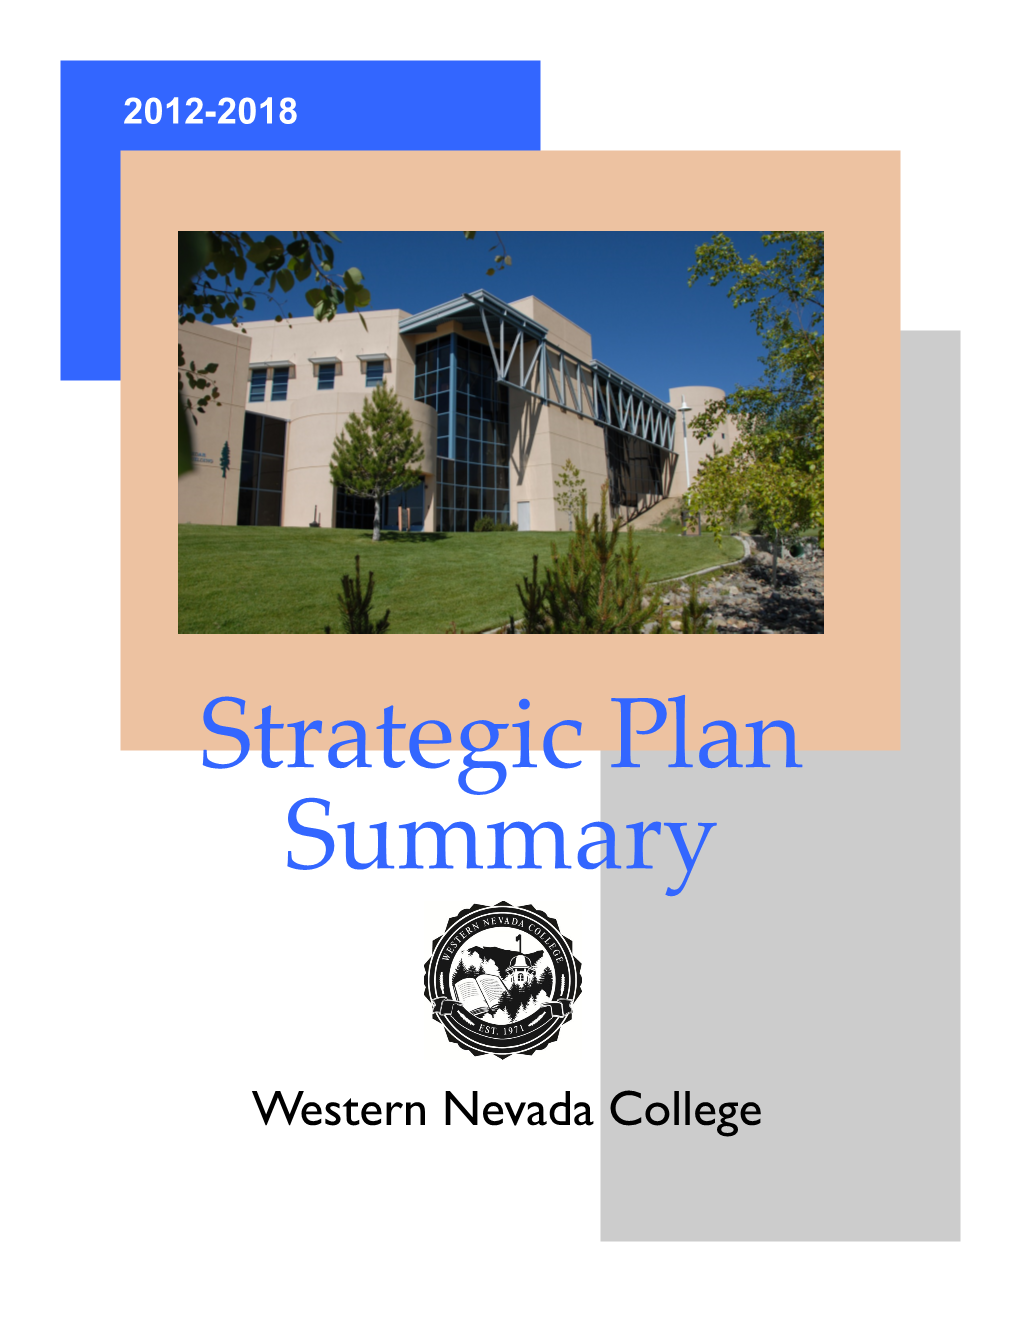 WNC Strategic Plan Summary